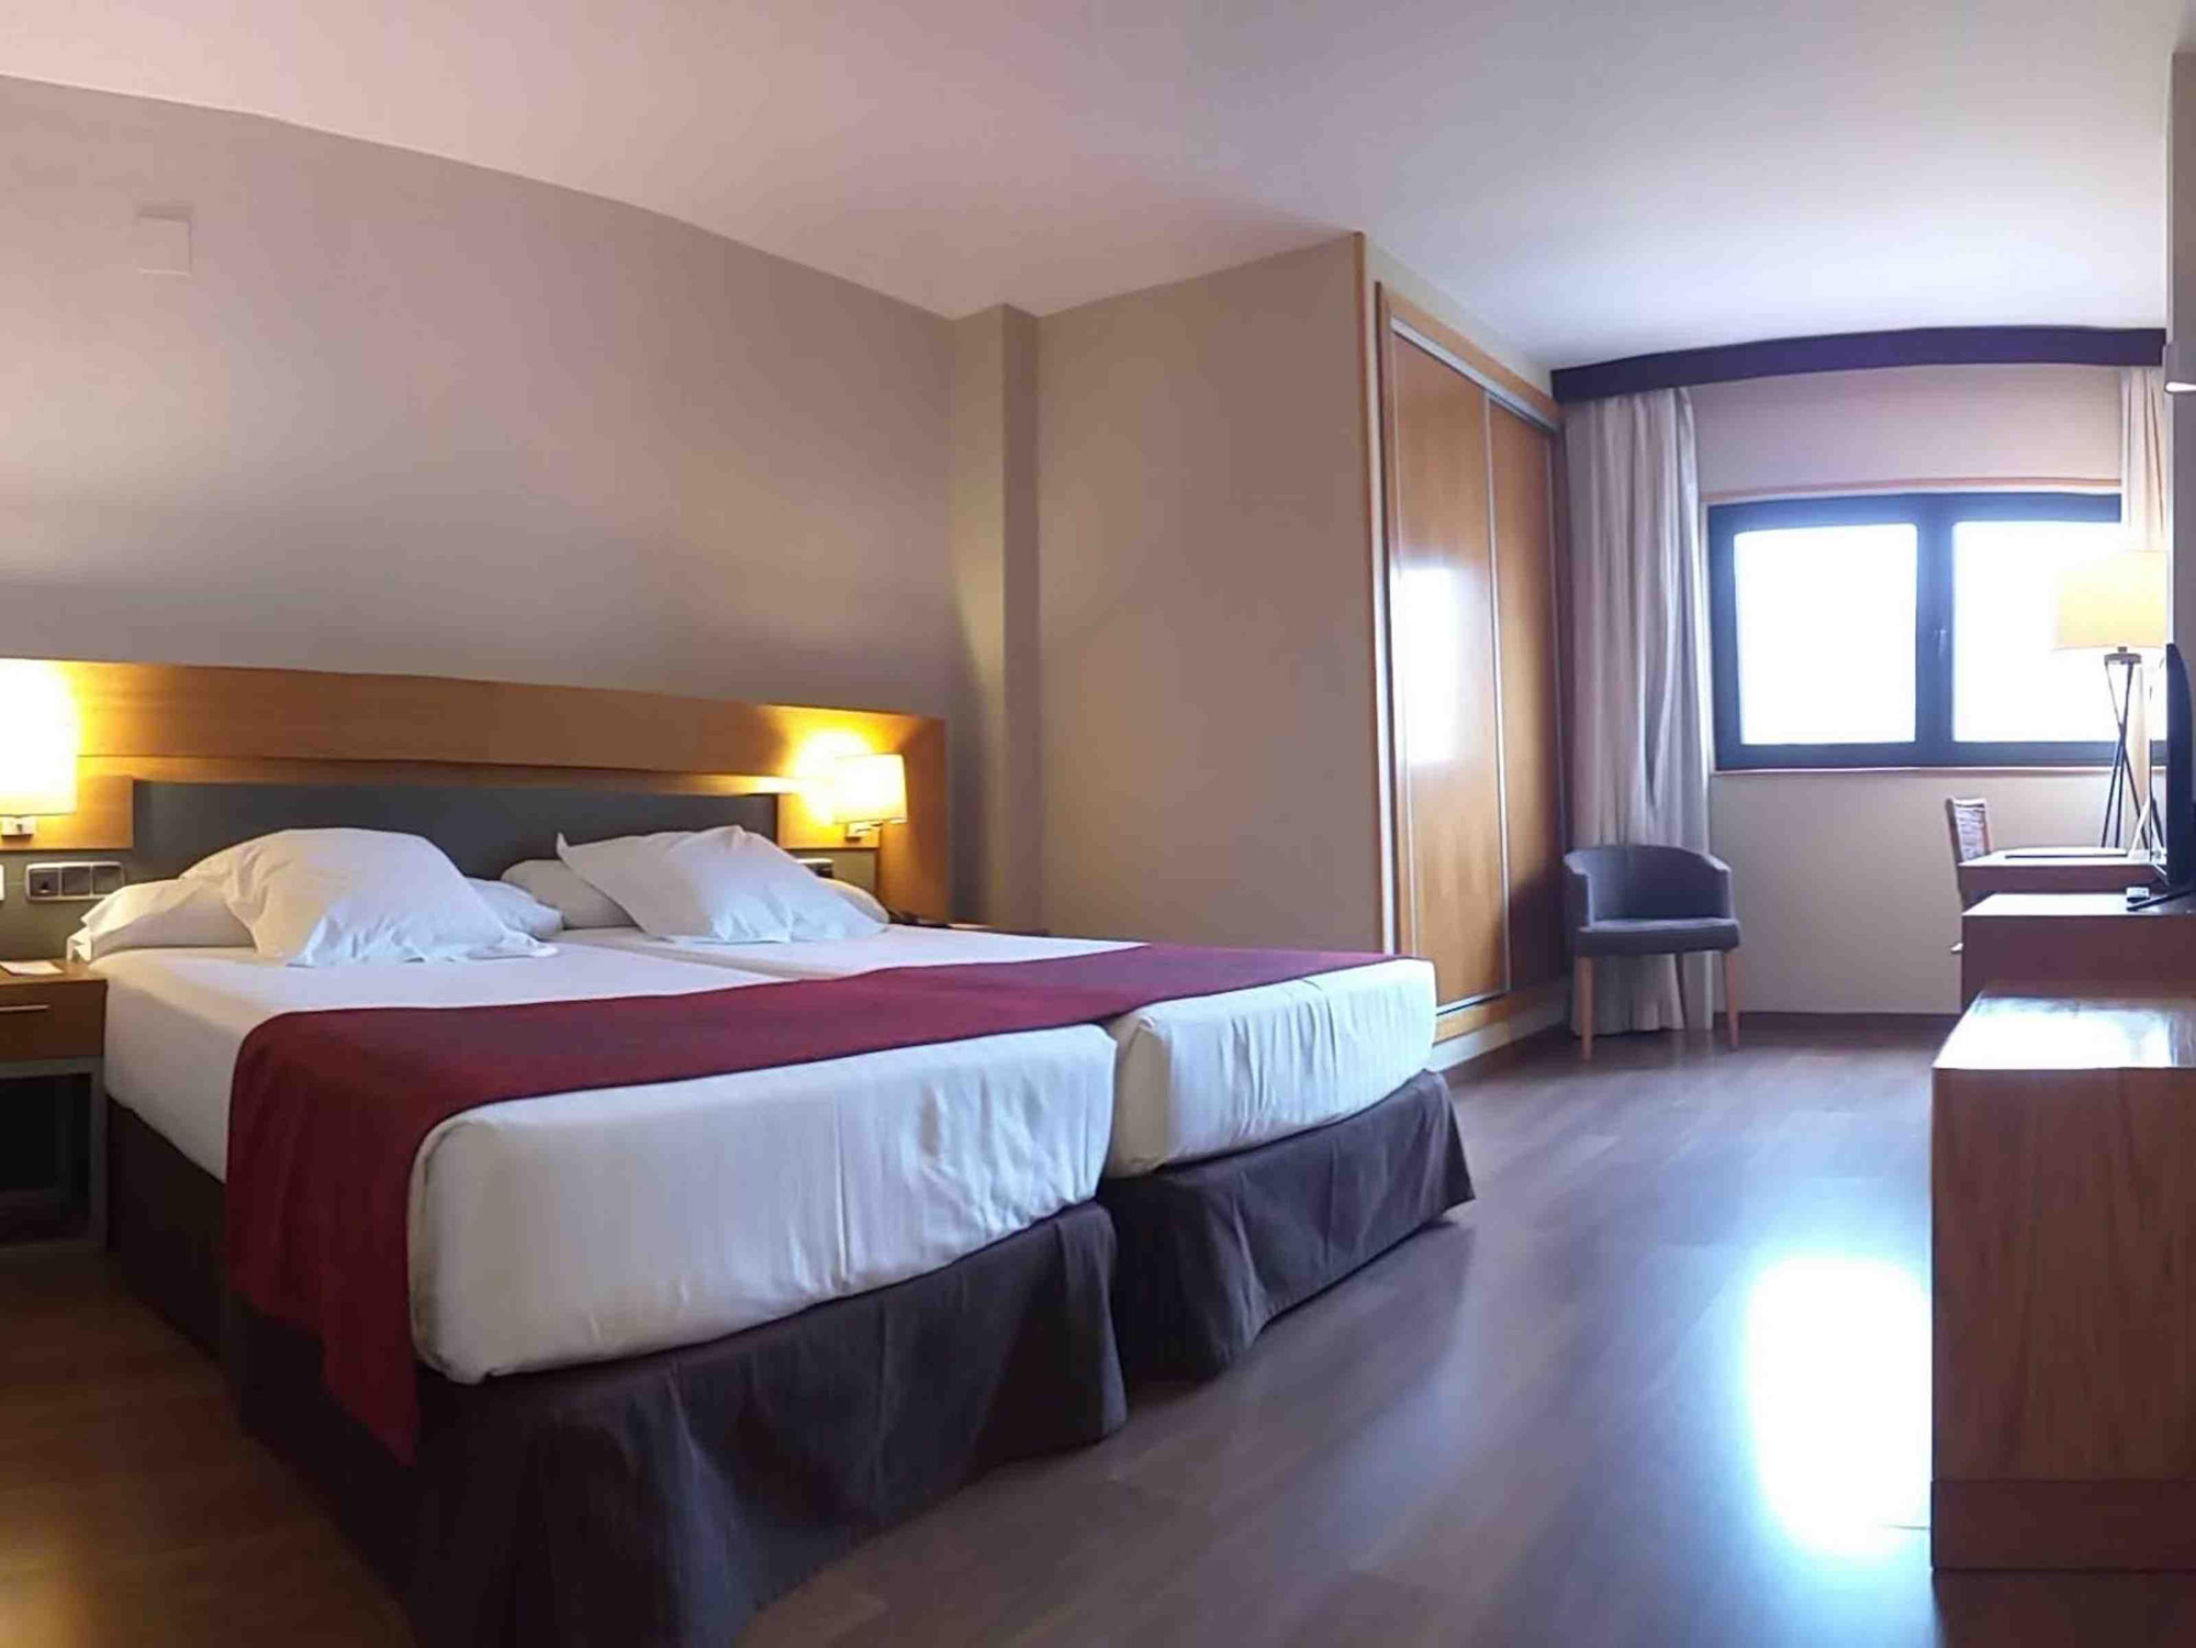 Hotel Guadalmedina - Best Hotels in Malaga